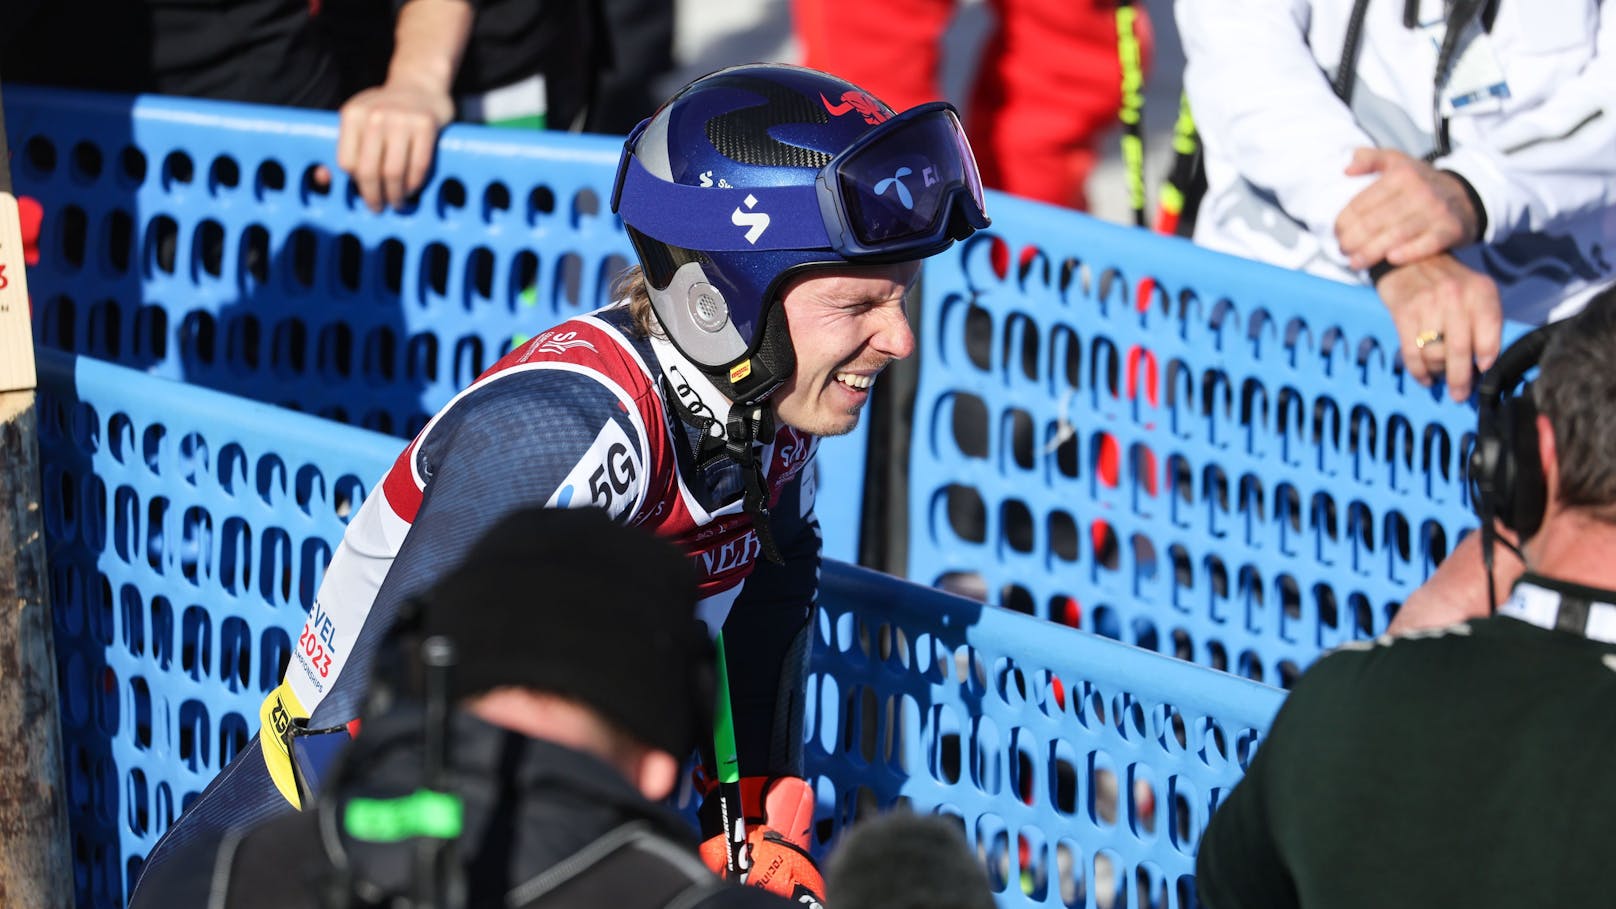 Ski-Star Kristoffersen frustriert: "Er ist so weit weg"